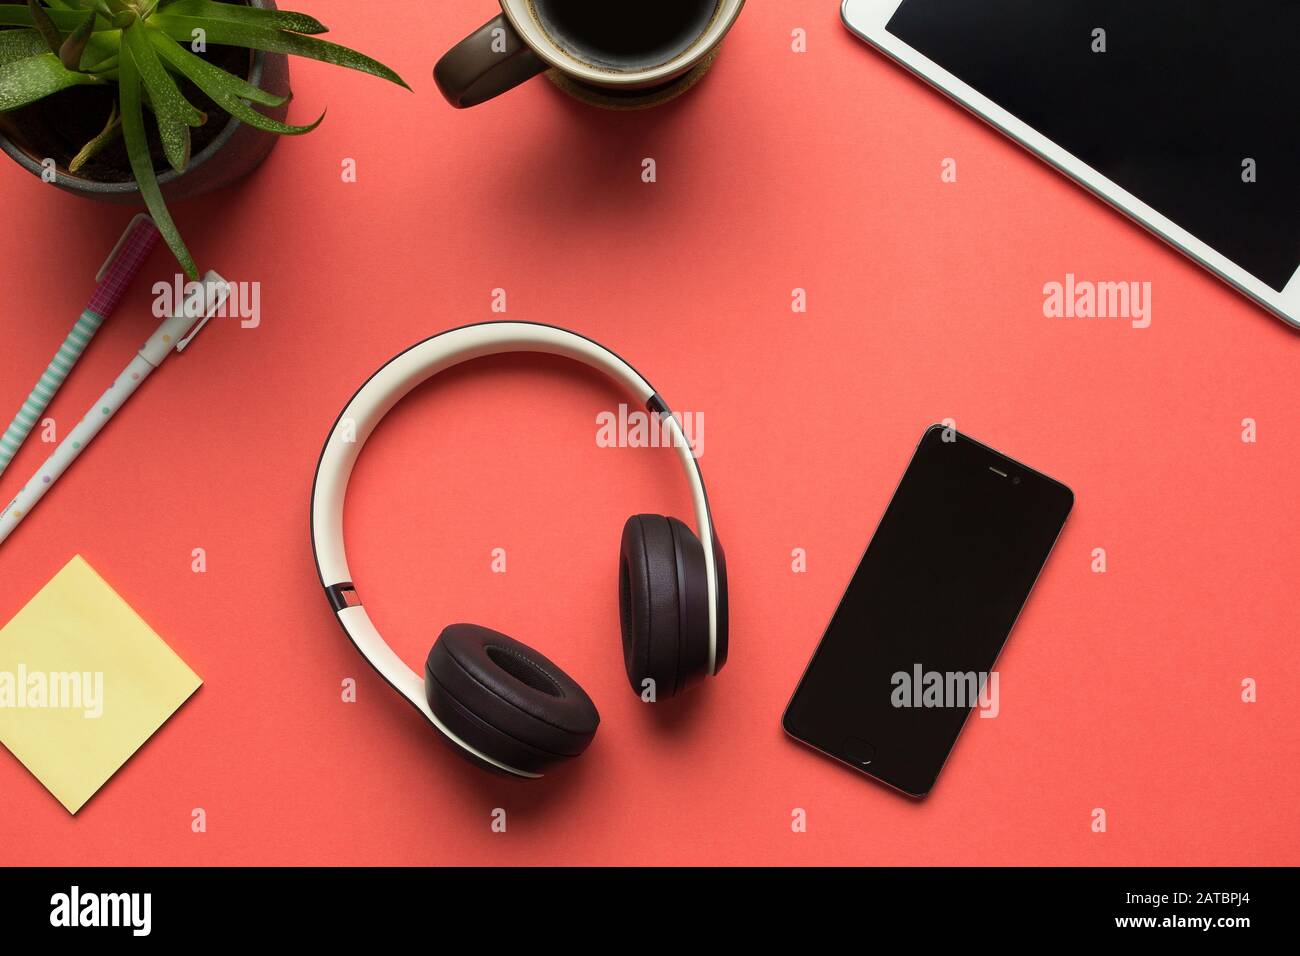 Fotos von Bluetooth-Kopfhörern und Smartphone vorrätig, um Musik auf rotem Hintergrund zu hören. Einige Desktop-Objekte um sie herum Stockfoto